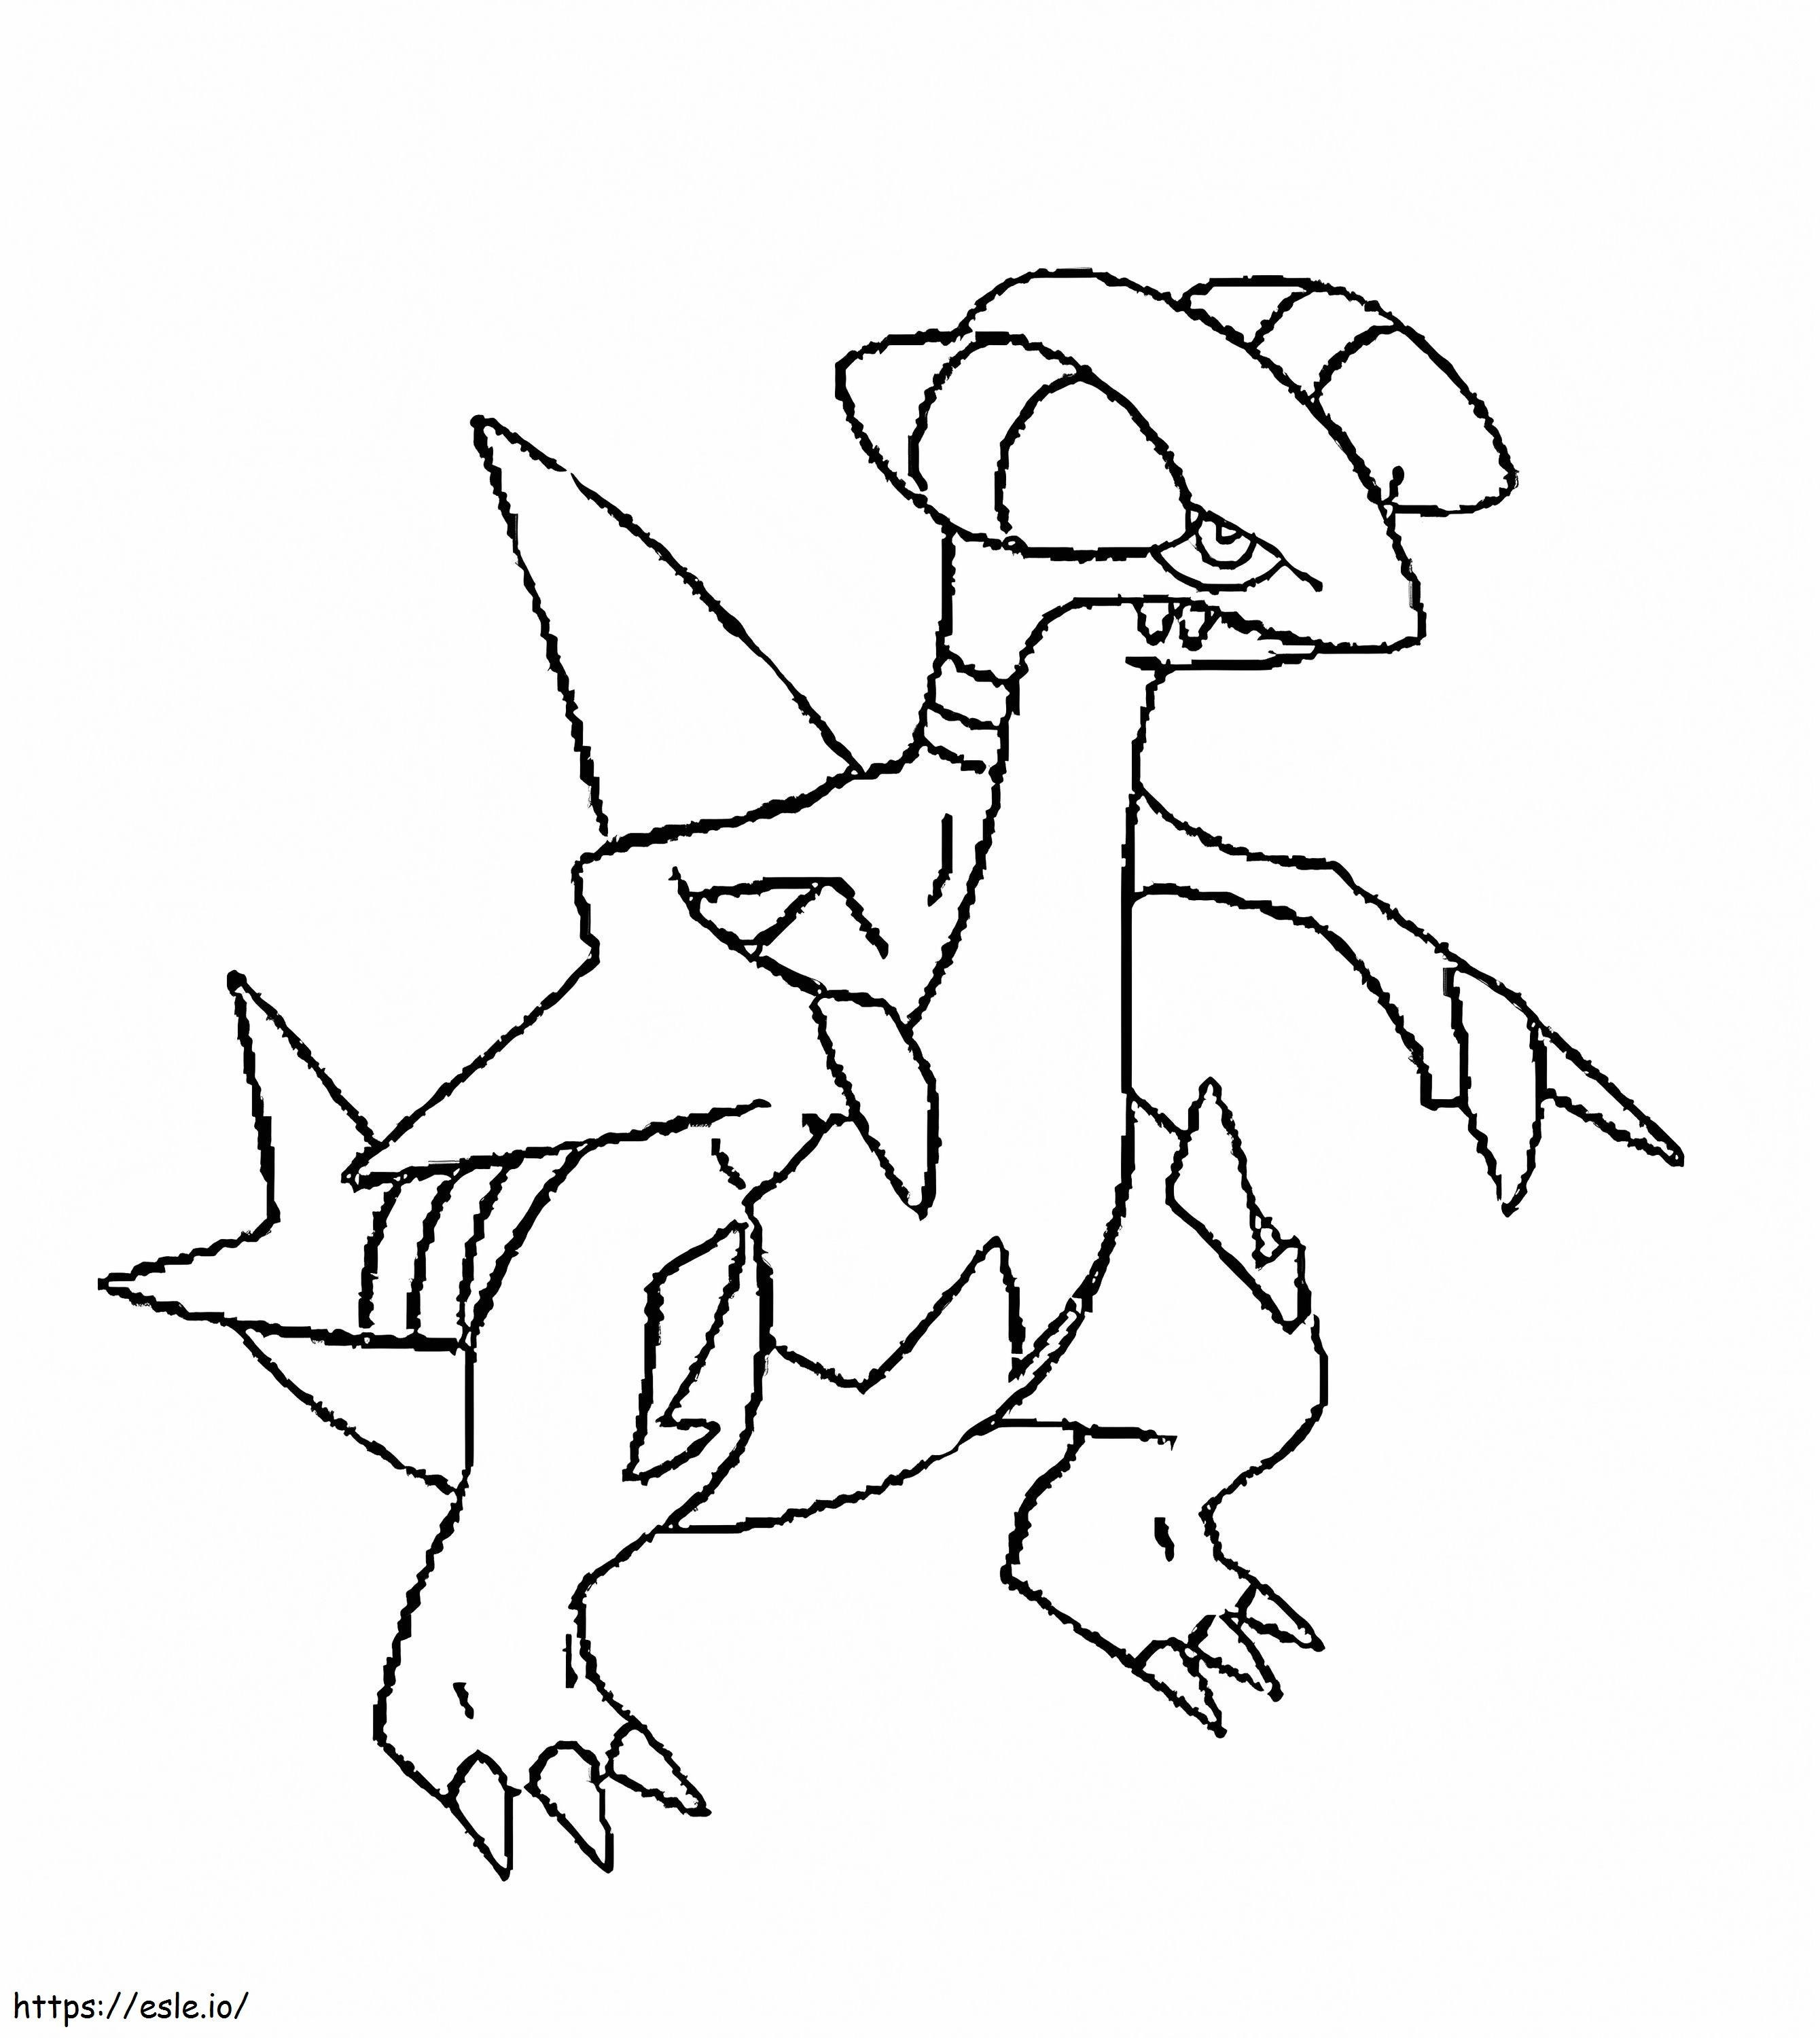 Coloriage Pokémon Gabite Gen 4 à imprimer dessin